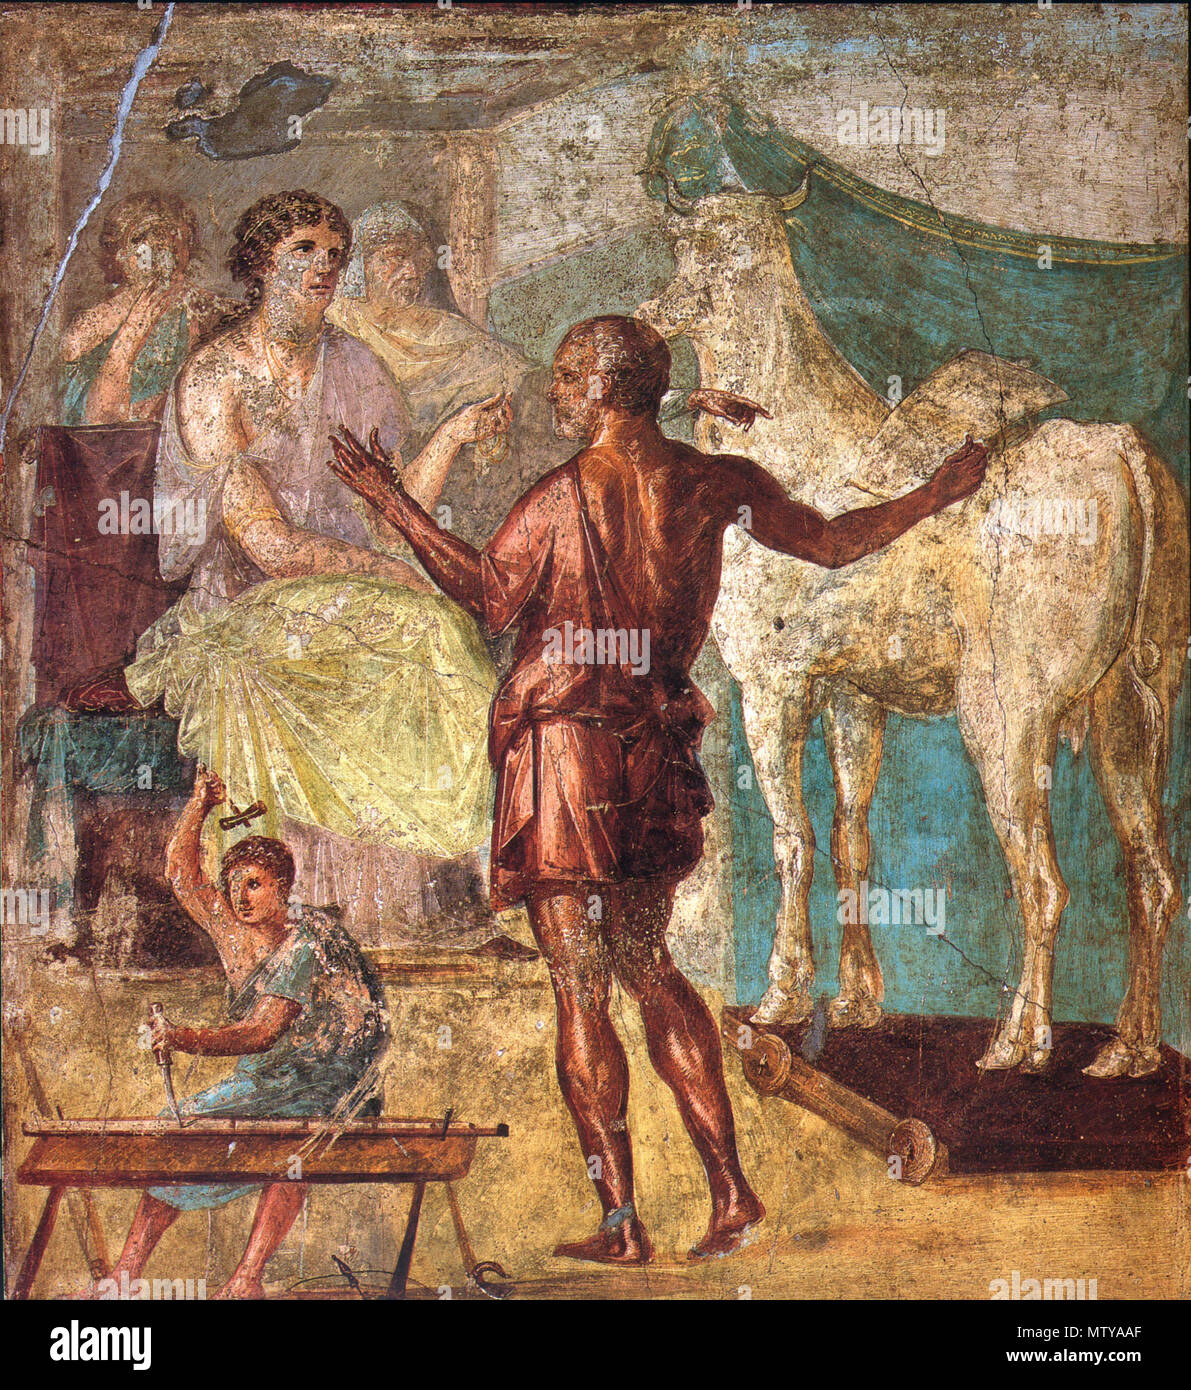 . English: Daedalus, Pasiphae and wooden cow. Roman fresco from the northern wall of the triclinium in the Casa dei Vettii (VI 15,1) in Pompeii. Deutsch: Daedalus übergibt Pasiphae, der Gemahlin des Minos, die hölzerne Kuh. Römisches Fresko von der Nordwand des Tricliniums in der Casa dei Vettii (VI 15,1) in Pompeji. 13 March 2009. WolfgangRieger 491 Pompeii - Casa dei Vettii - Pasiphae Stock Photo